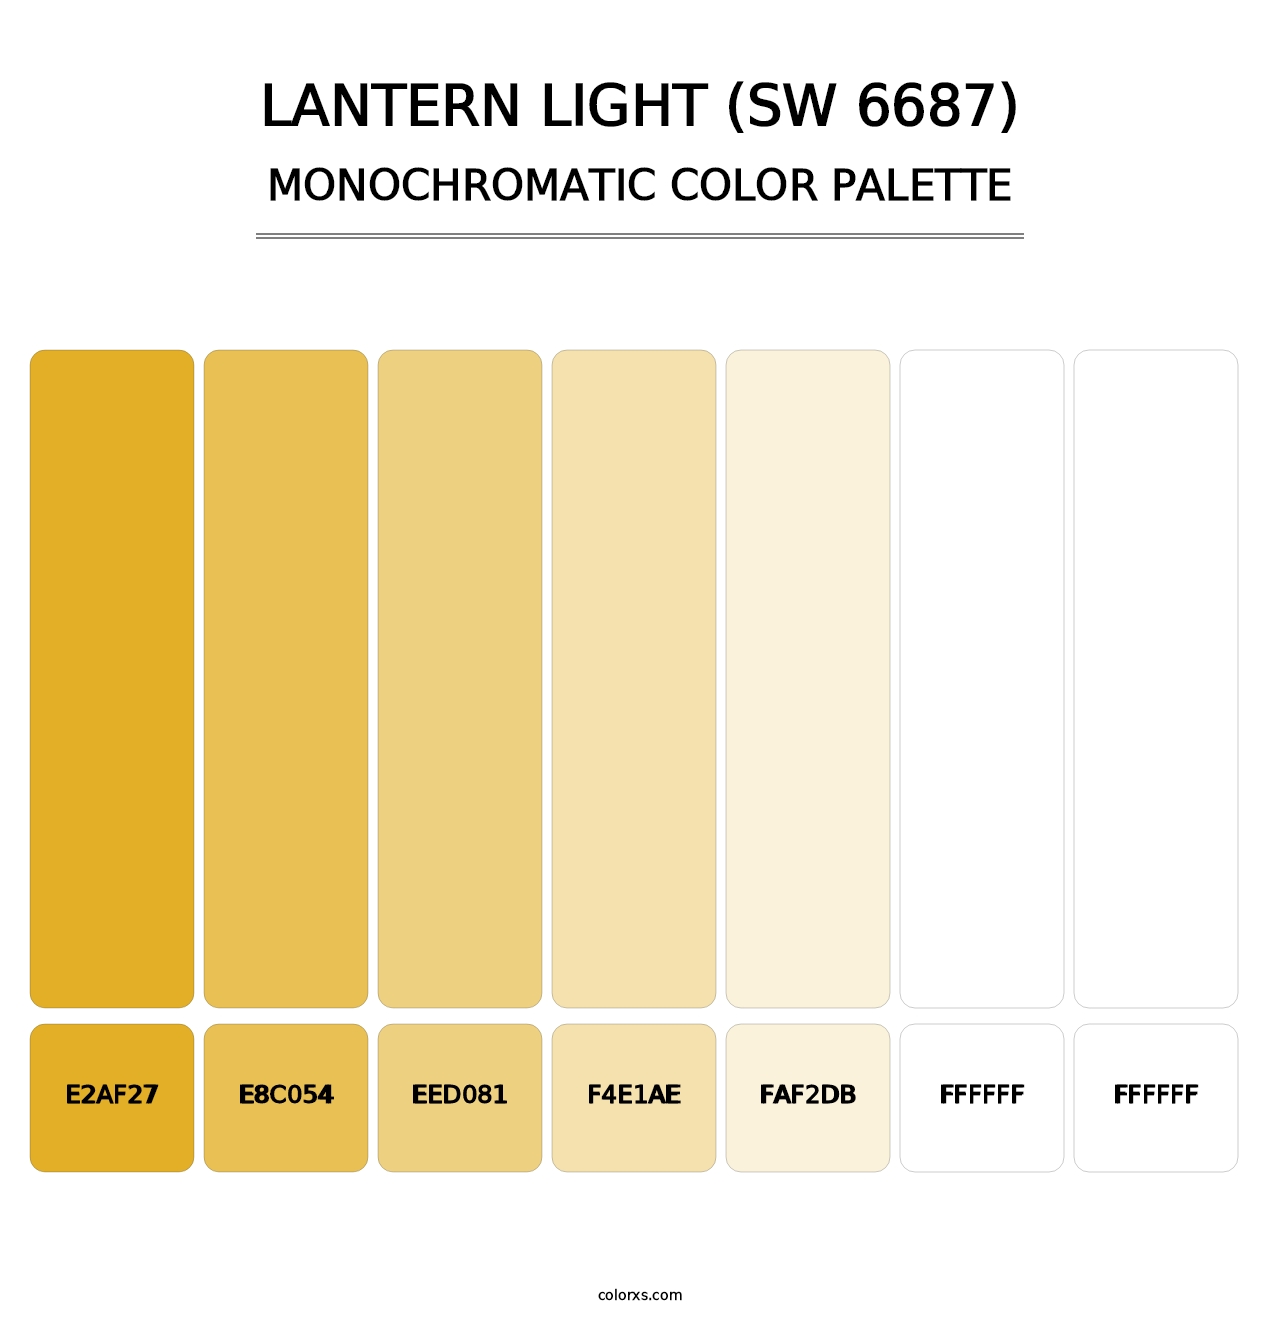 Lantern Light (SW 6687) - Monochromatic Color Palette